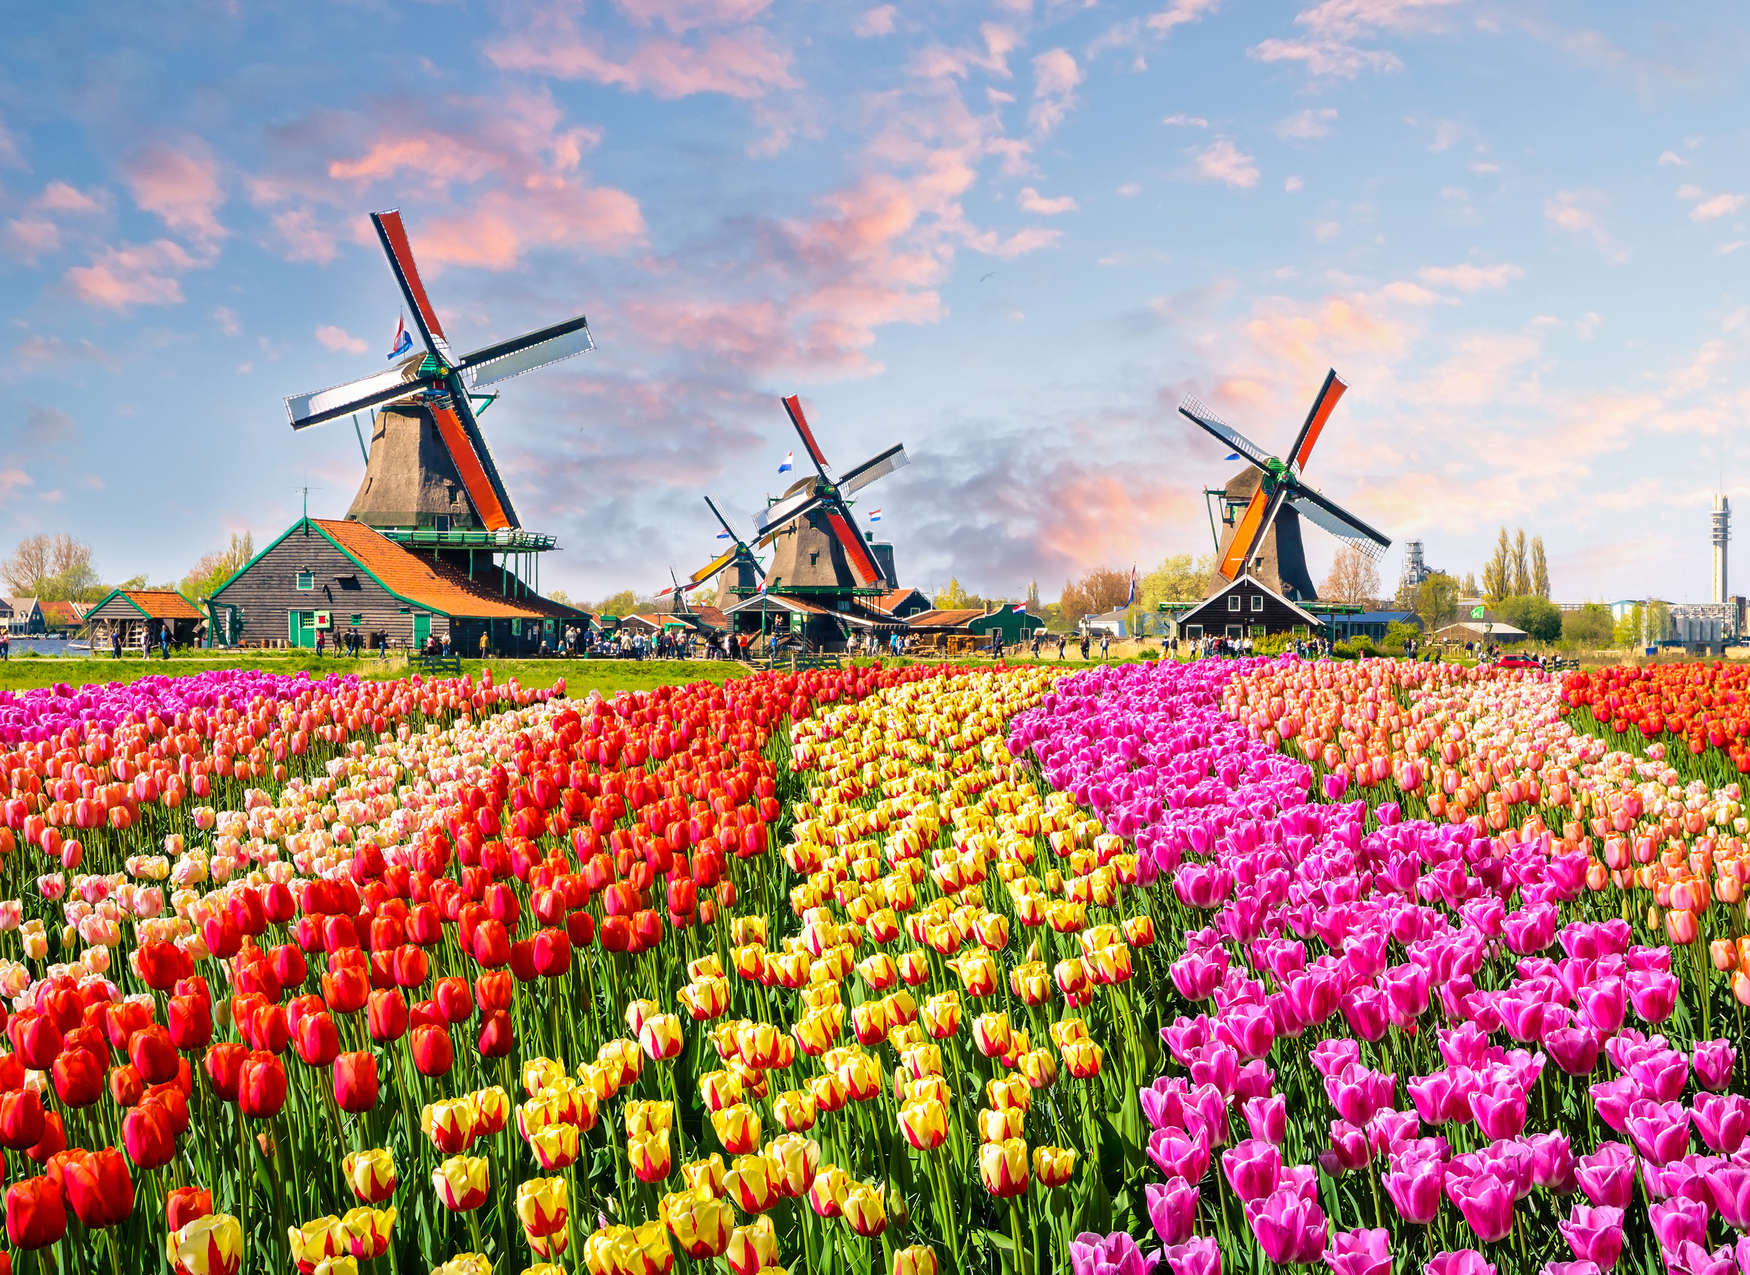             Holland Tulips & Pinwheel Behang - Kleurrijk, Bruin, Roze
        